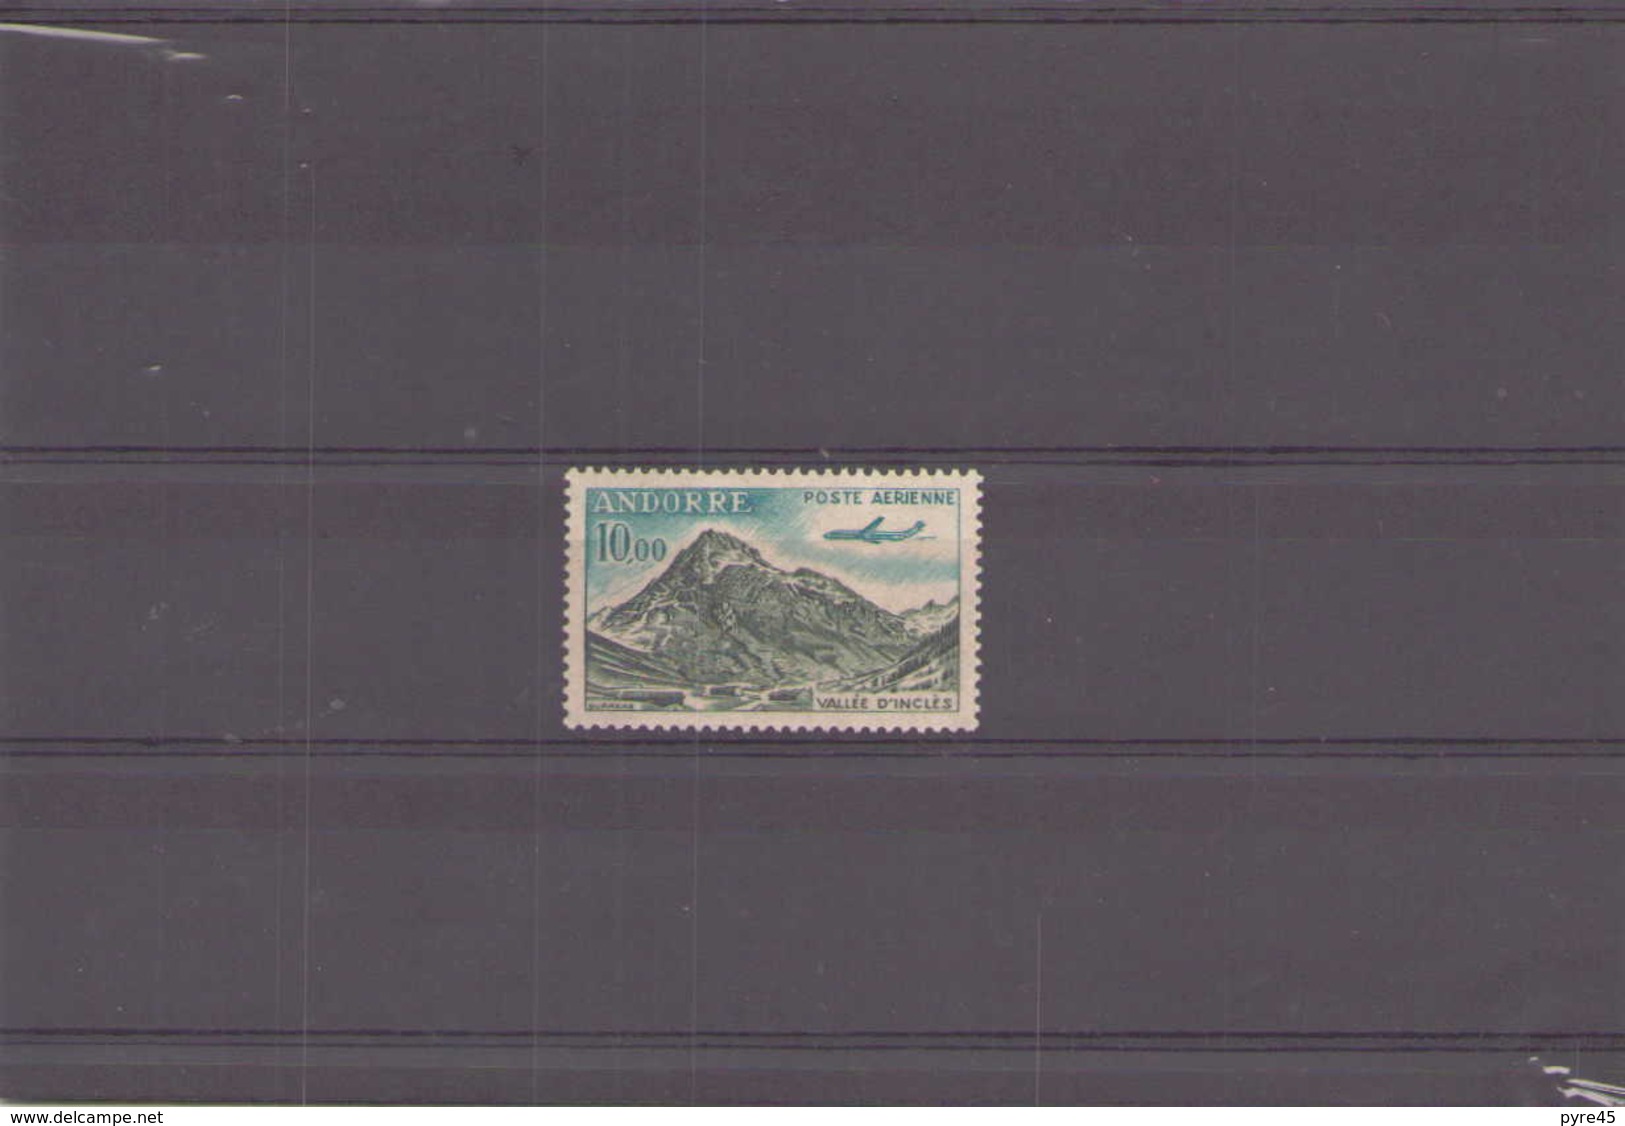 Andorre 1961 / 4 Poste Aerienne N° 8 ** - Poste Aérienne